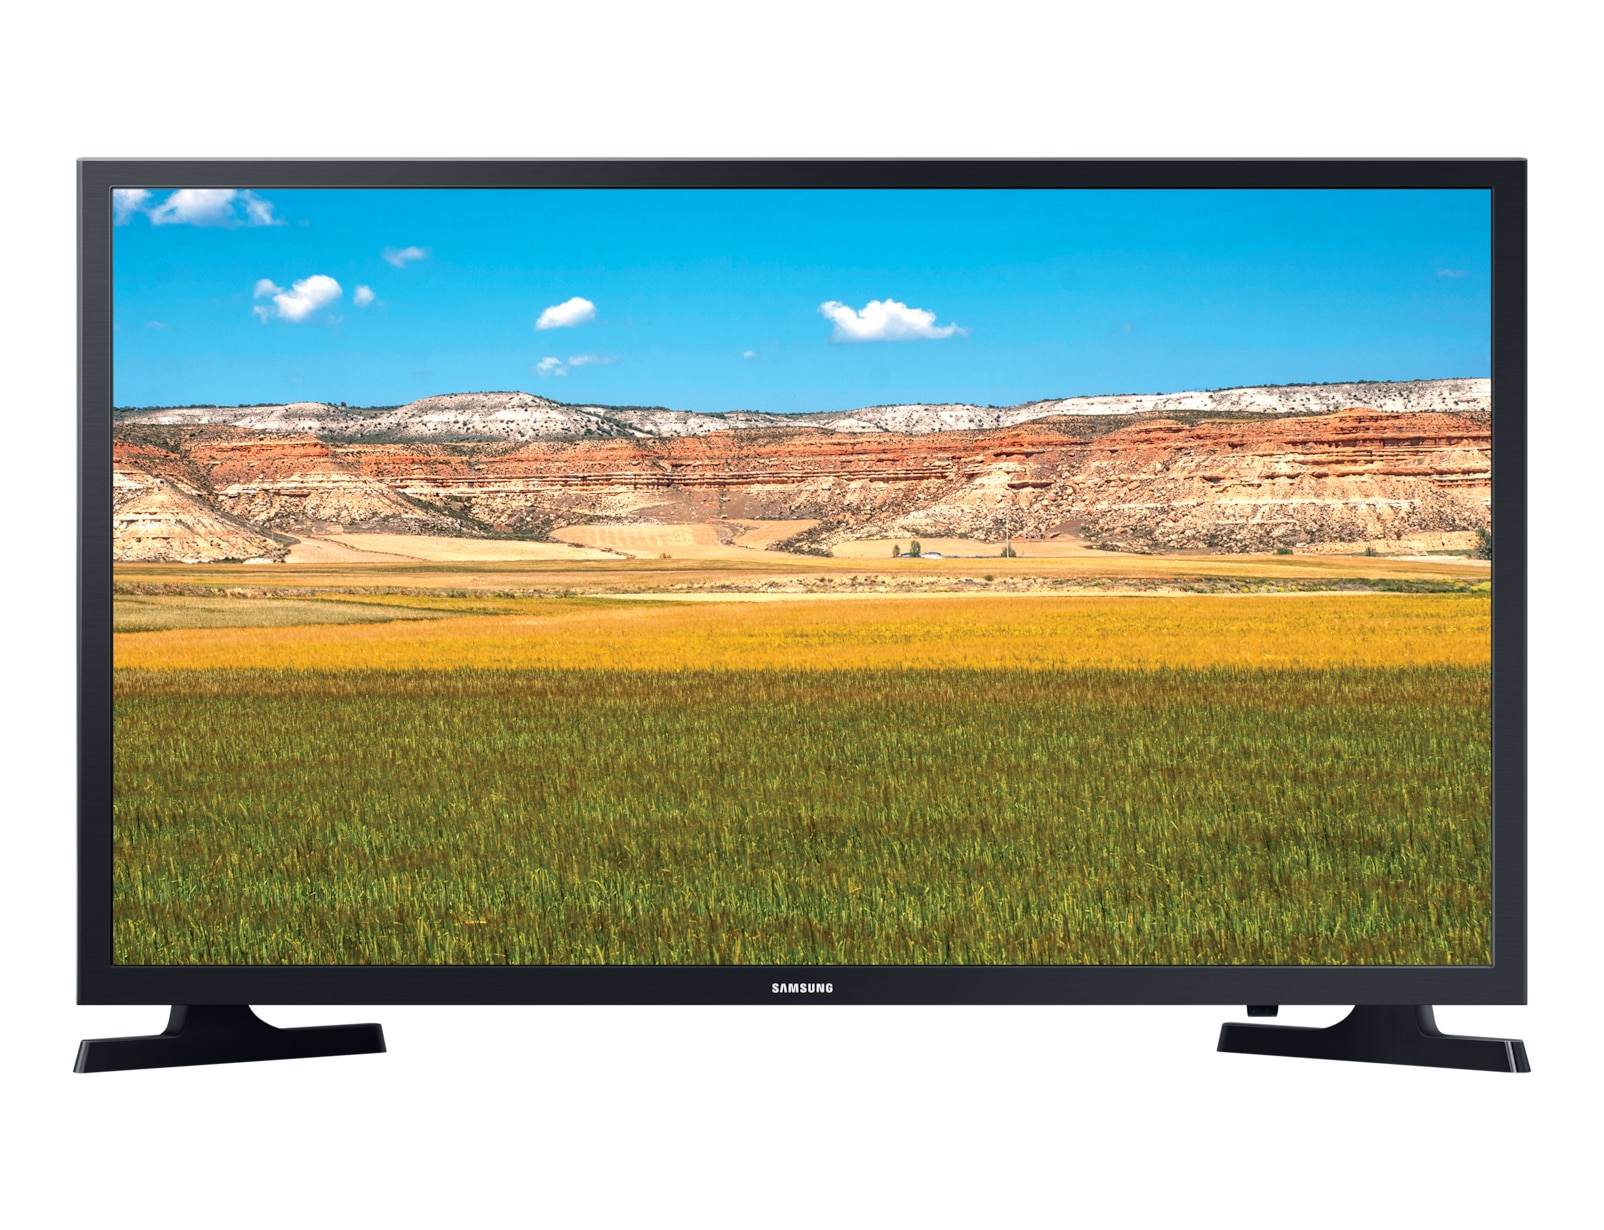 TV-32-SAM-HD-LED-SMART-DVBT2-SMART-DVBTS2-BLACK-UE32T4302-MISEOK